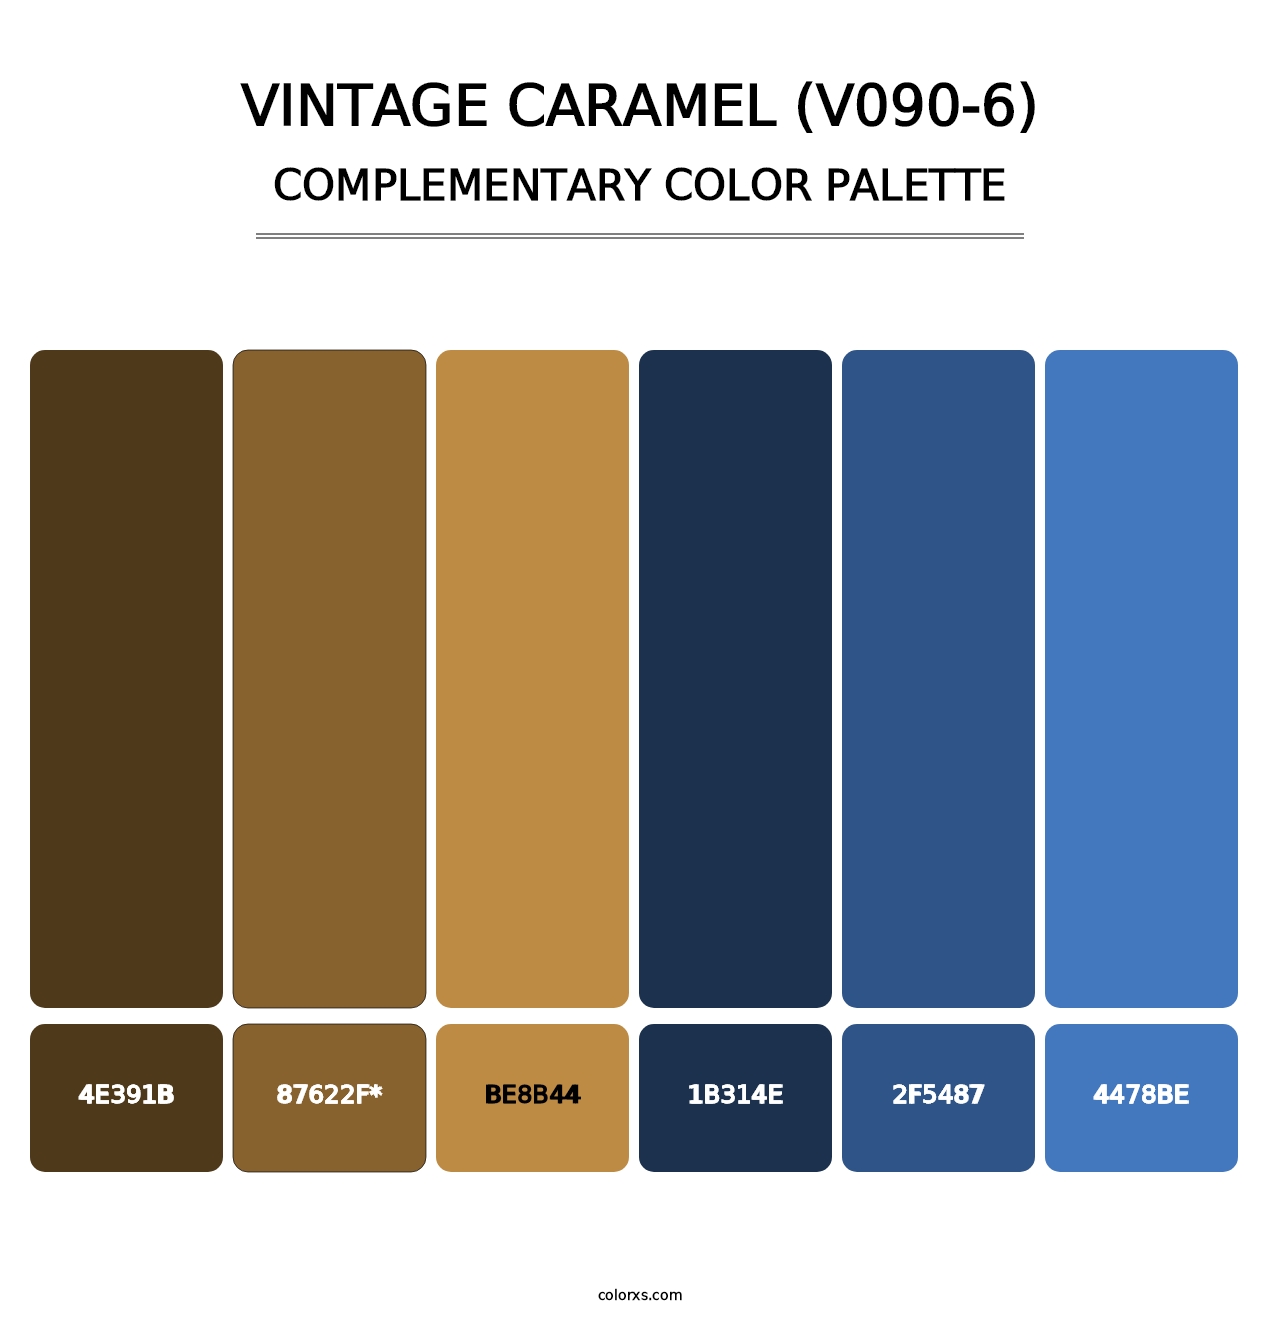 Vintage Caramel (V090-6) - Complementary Color Palette